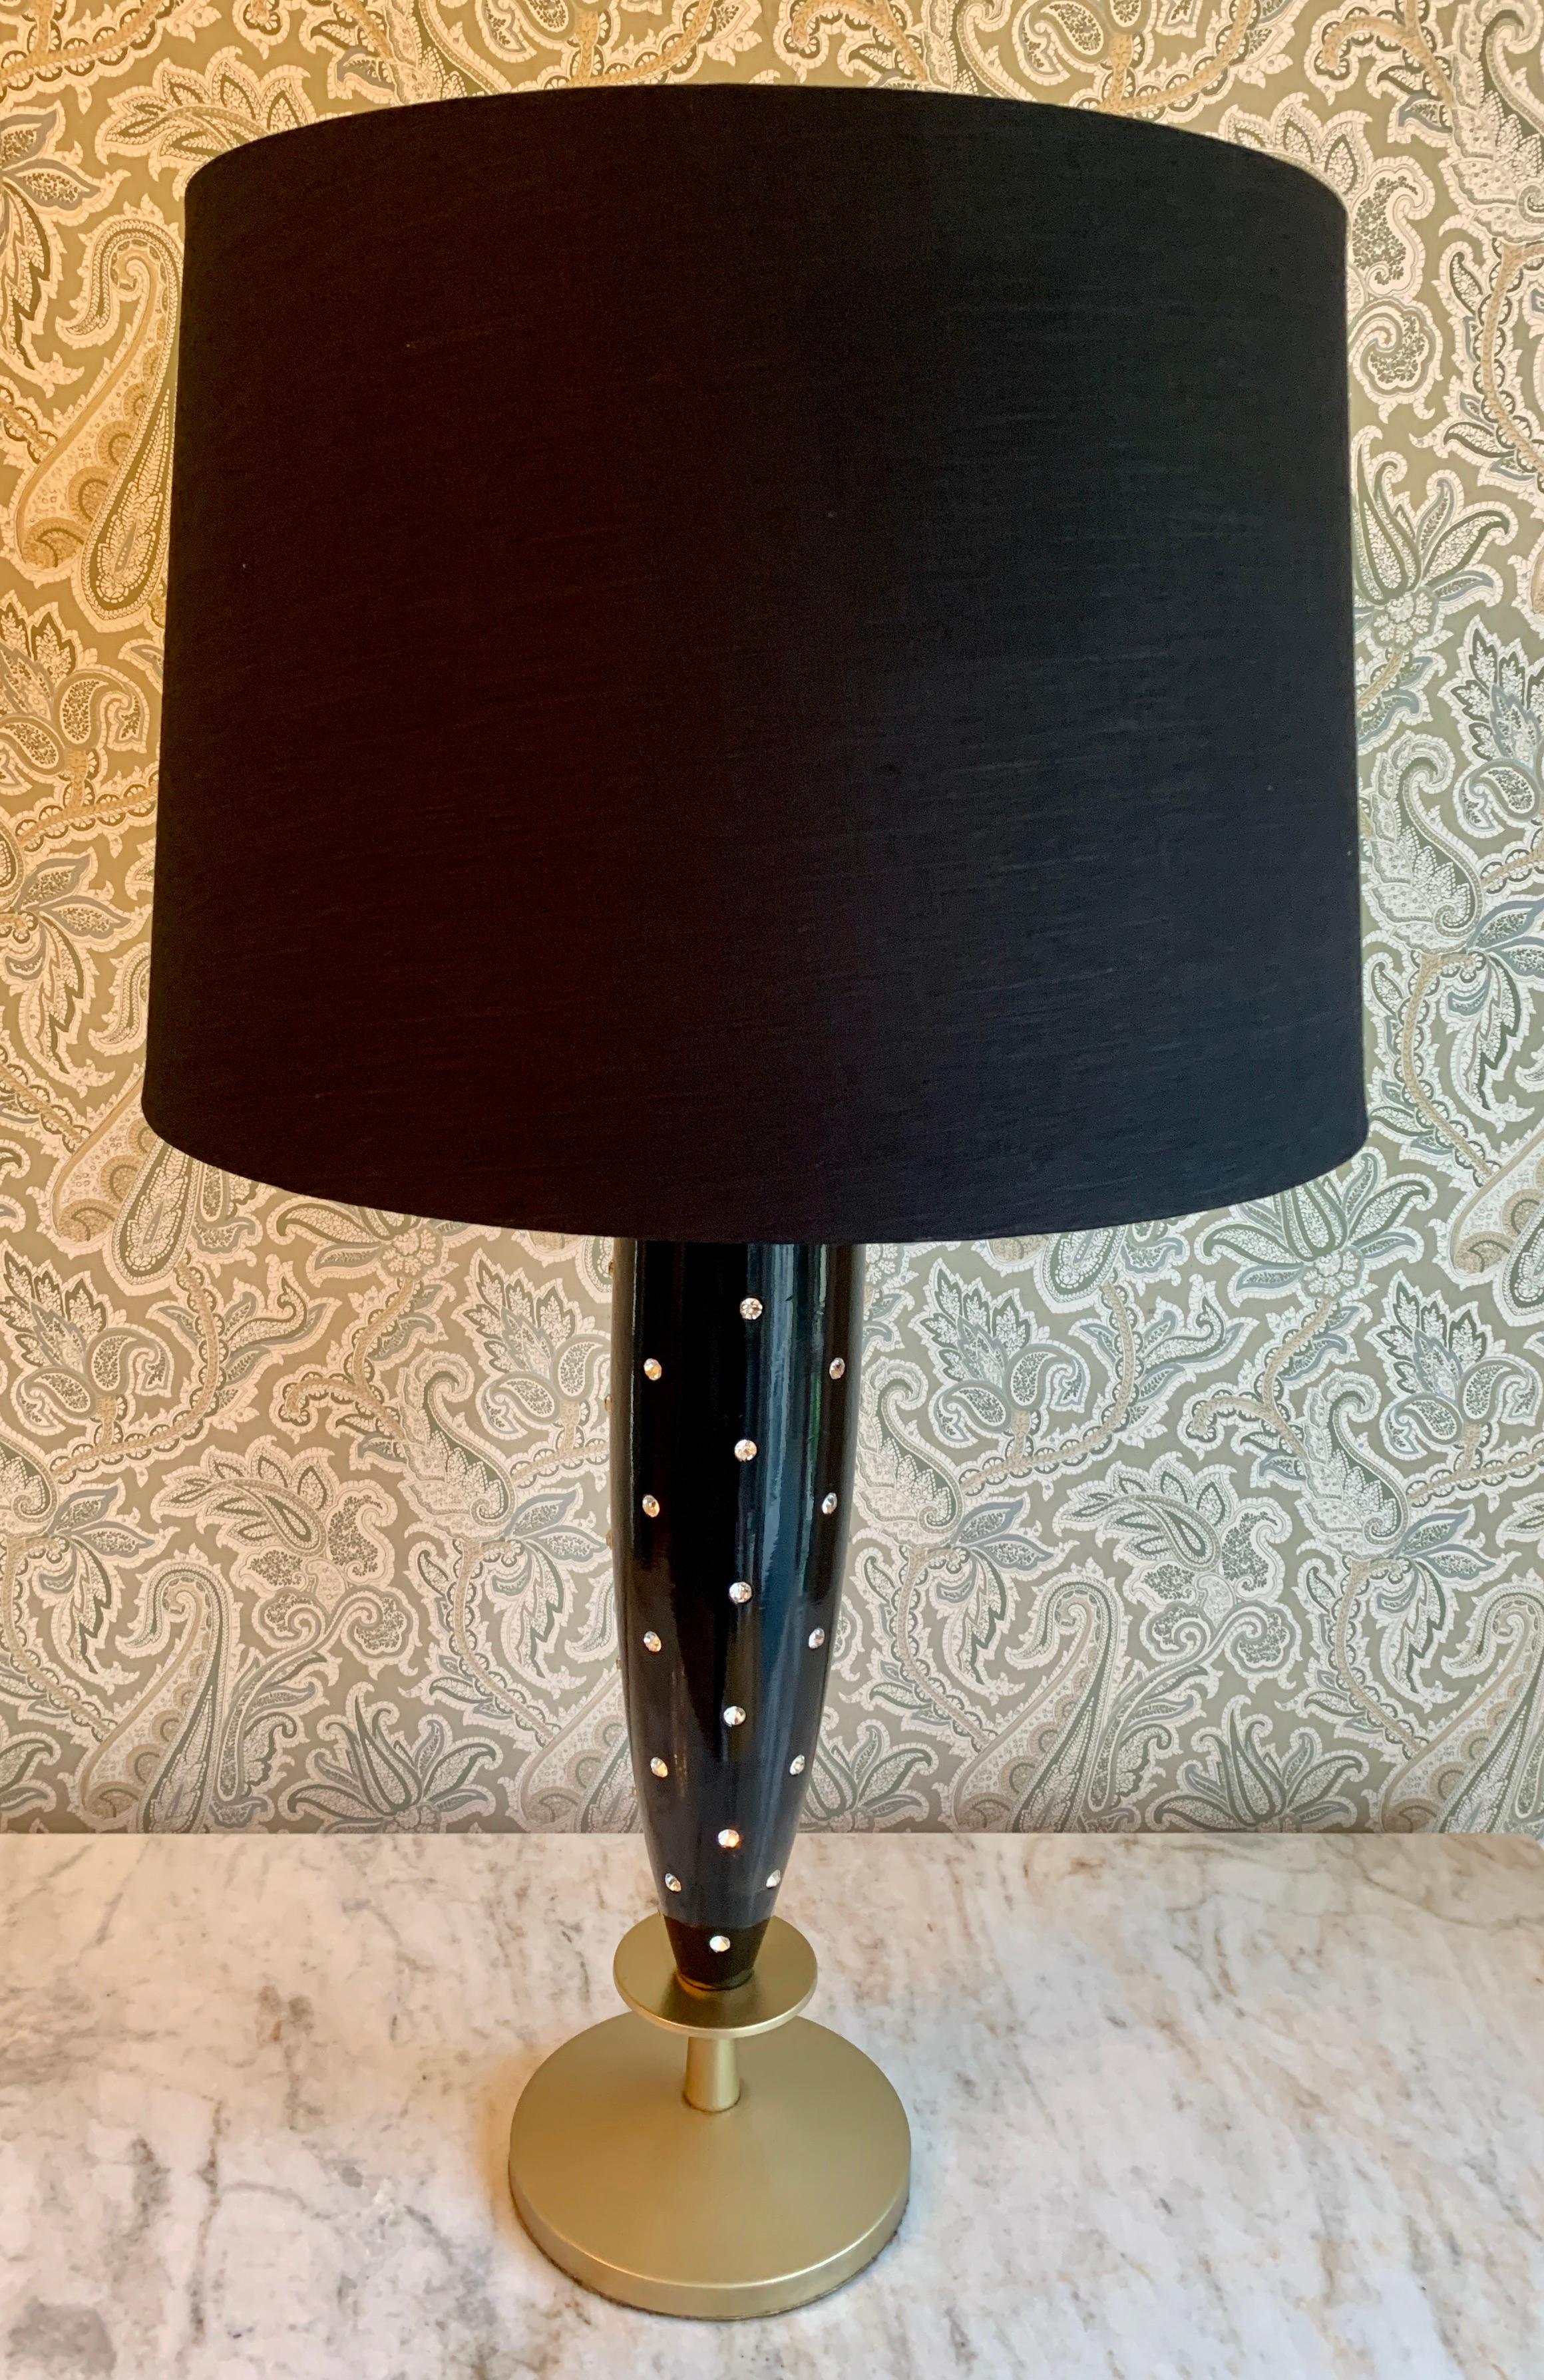 Tommi Parzinger Nietenlampe mit Seidenschirm, diese einzigartige Lampe eignet sich perfekt für jeden individuellen Raum und ist ein Kompliment für den Wasch- oder Ankleidebereich, besonders durch die sexy großen diamantartigen Nieten im schwarzen